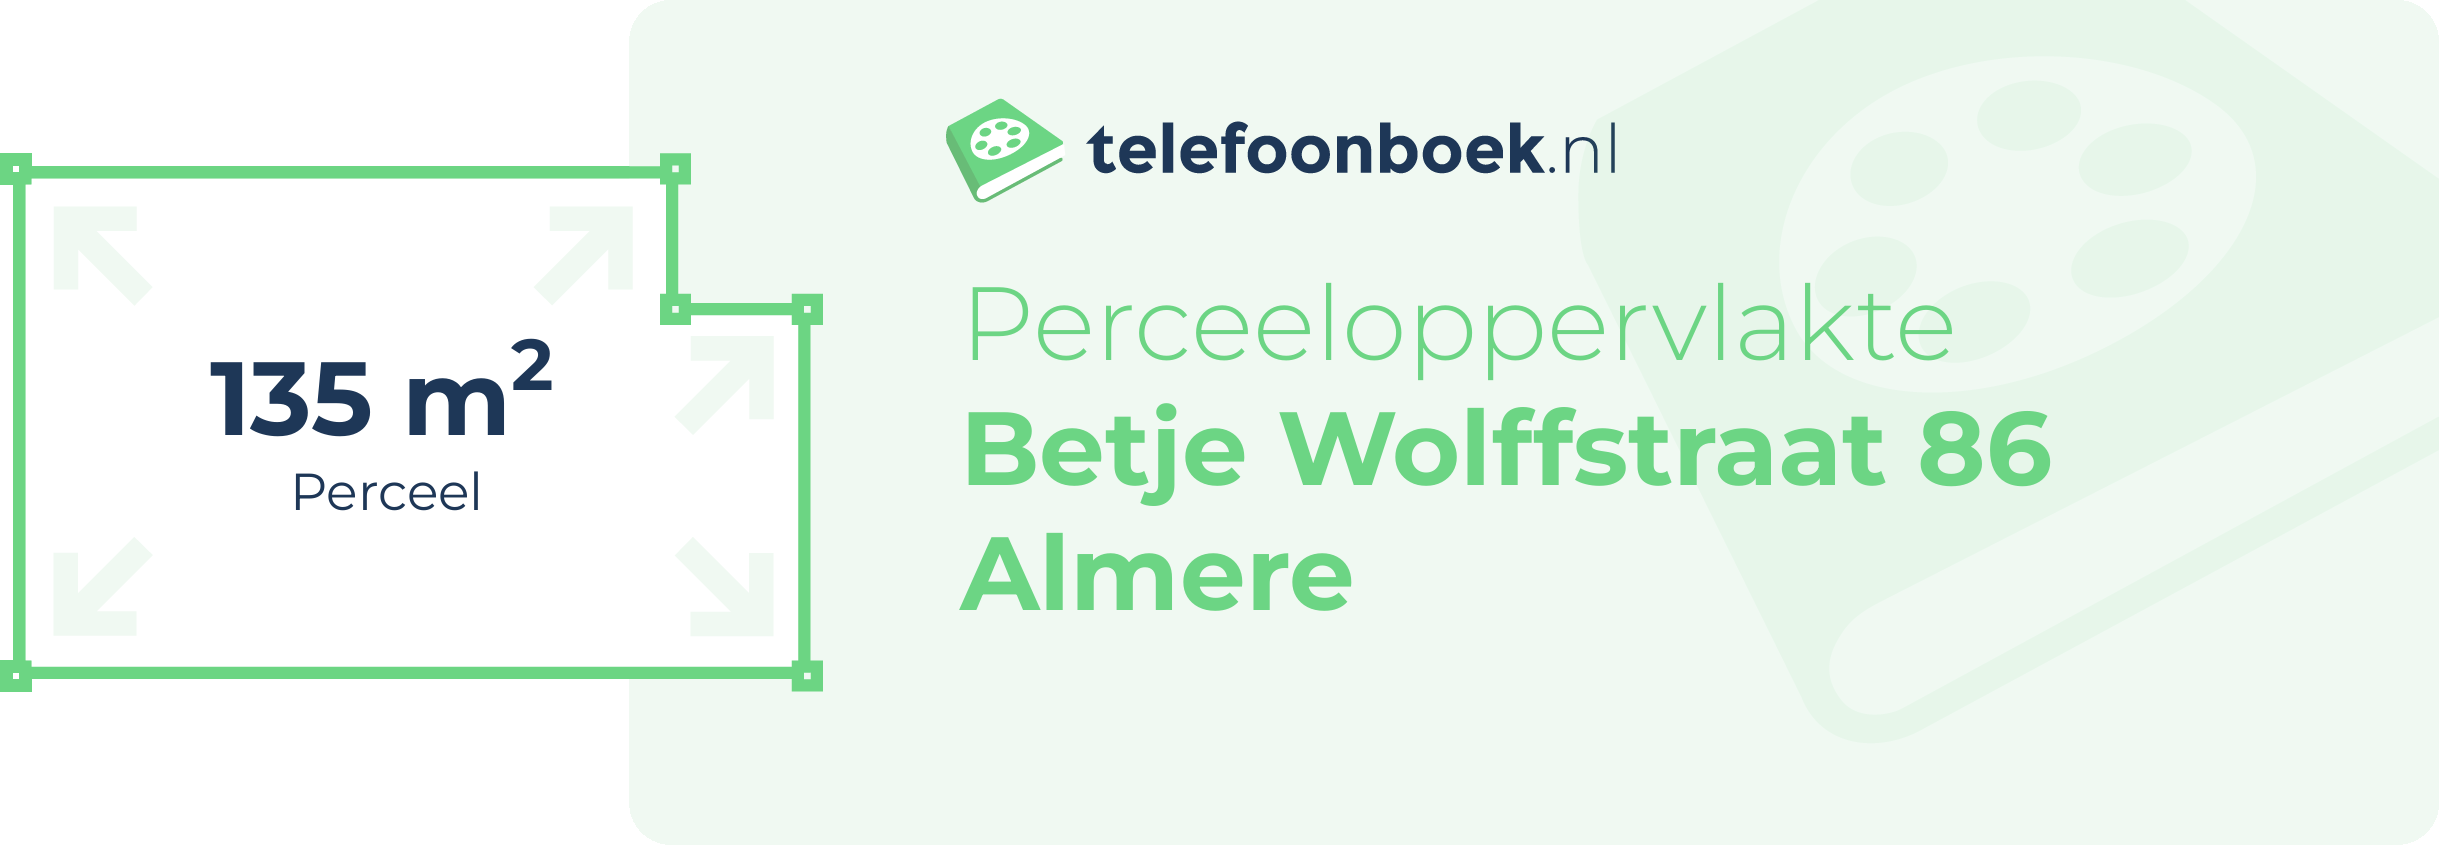 Perceeloppervlakte Betje Wolffstraat 86 Almere